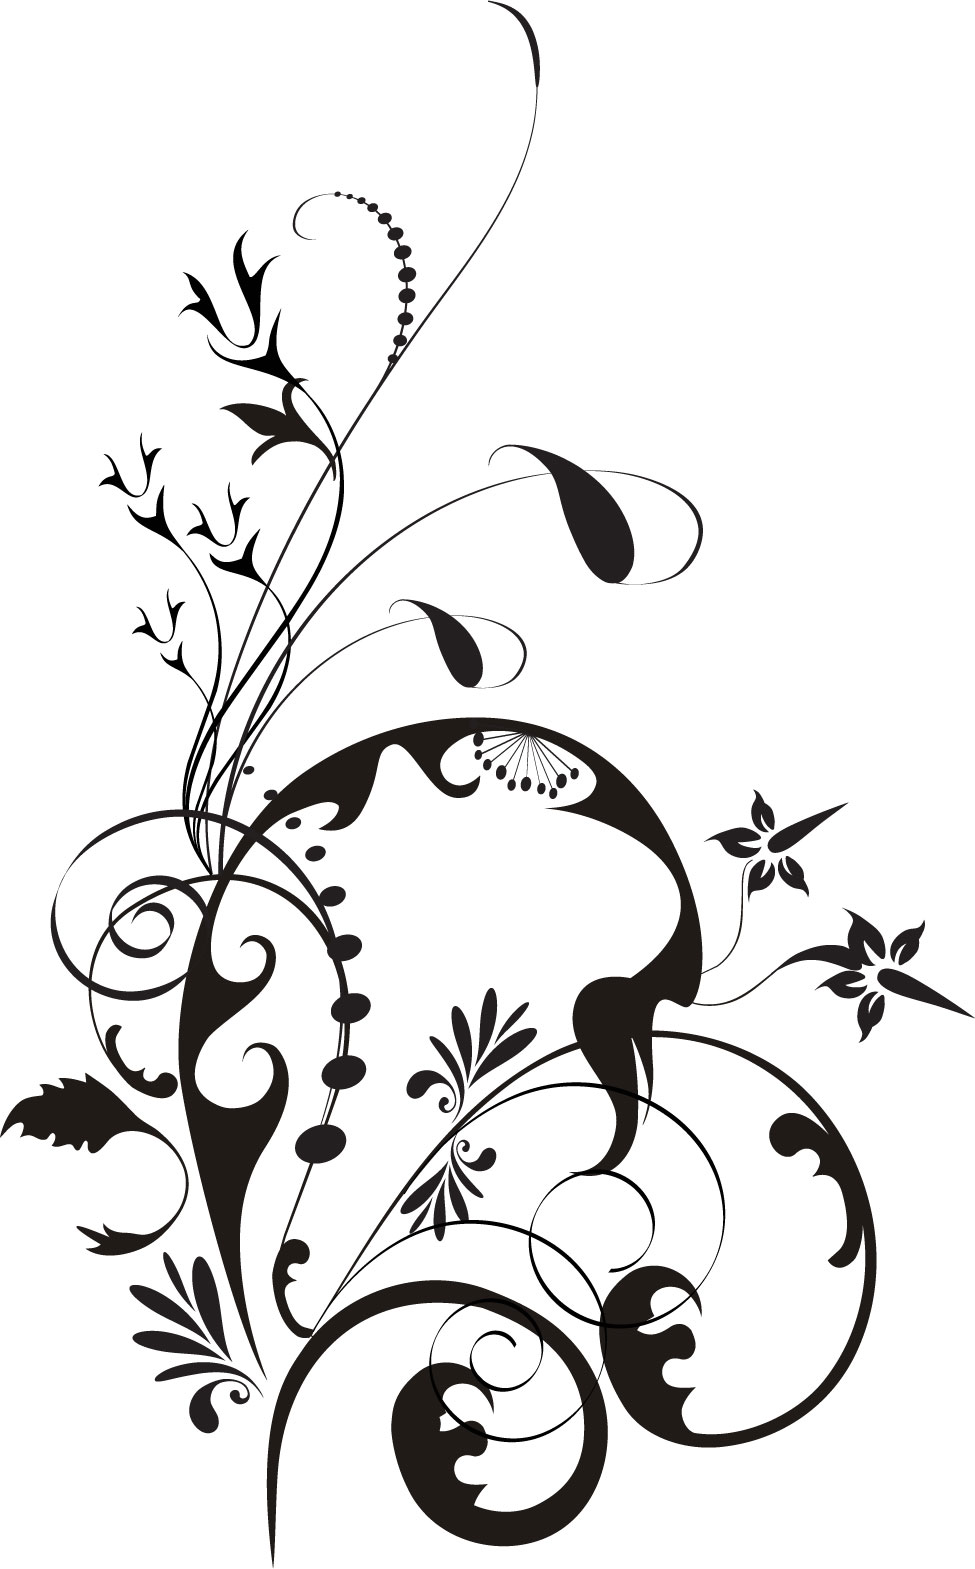 葉っぱの見本画像-白黒・茎葉・曲線